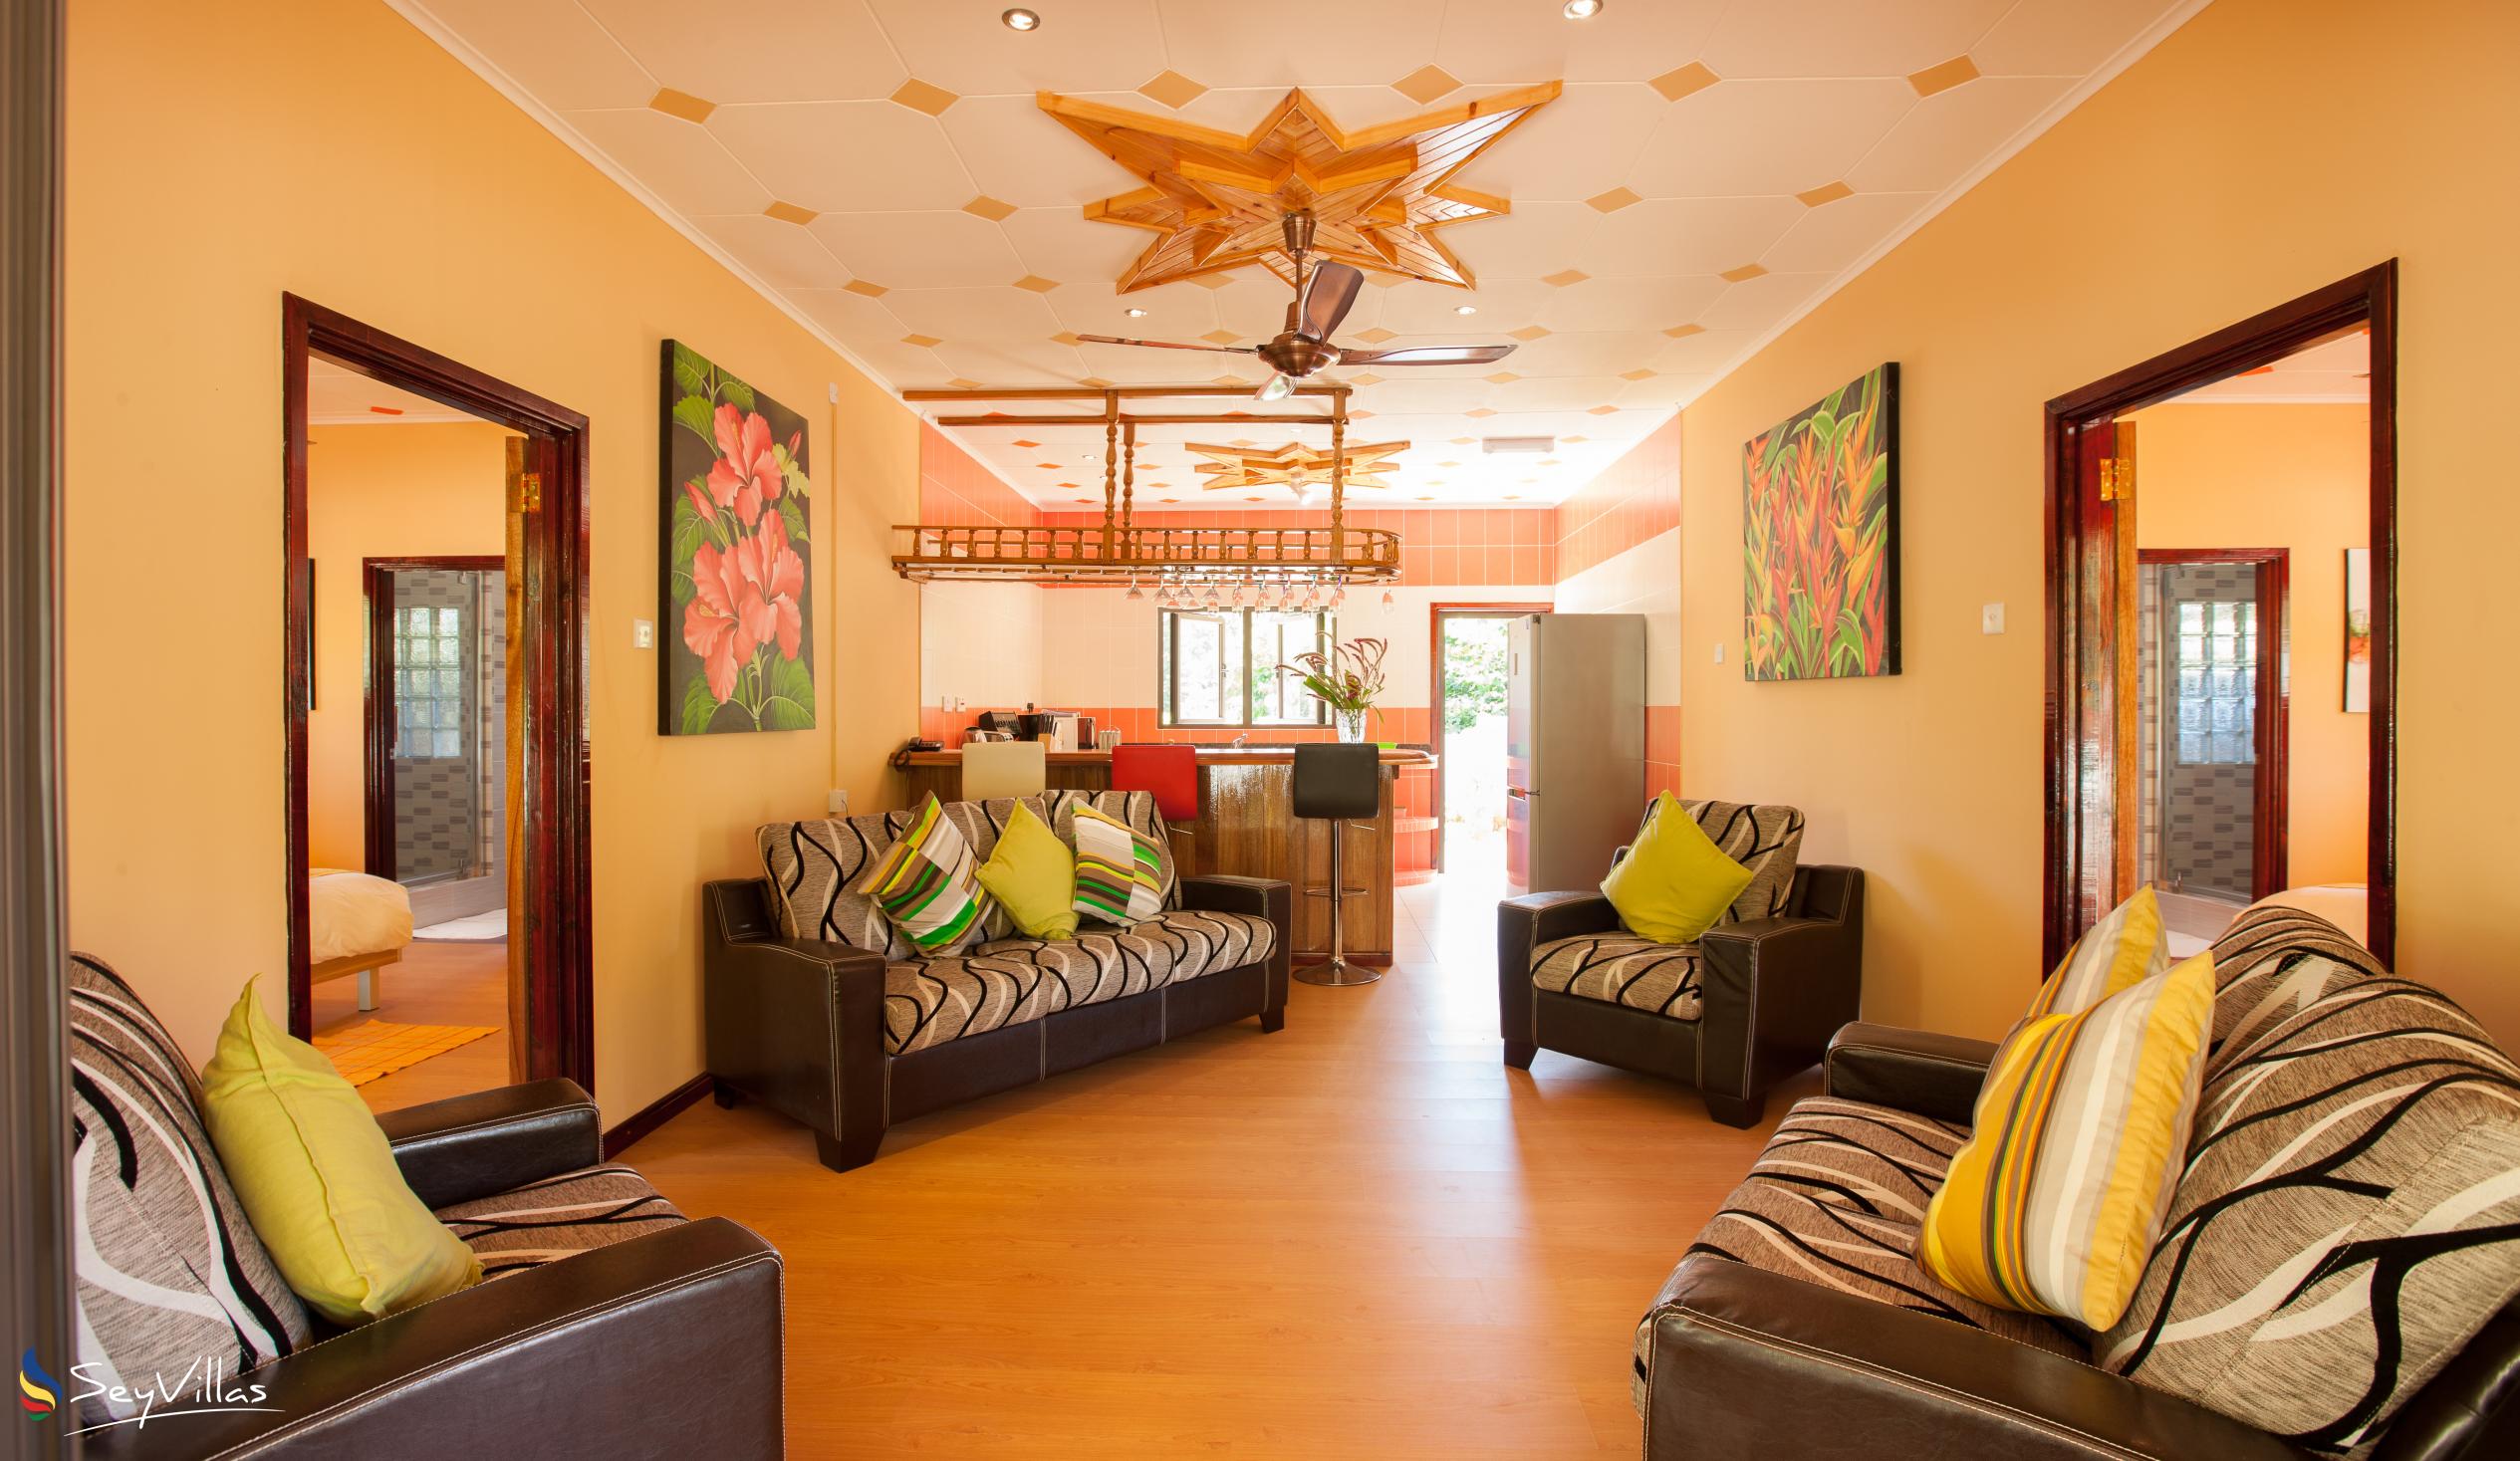 Photo 52: Casa de Leela - 2-Bedroom Bungalow - La Digue (Seychelles)